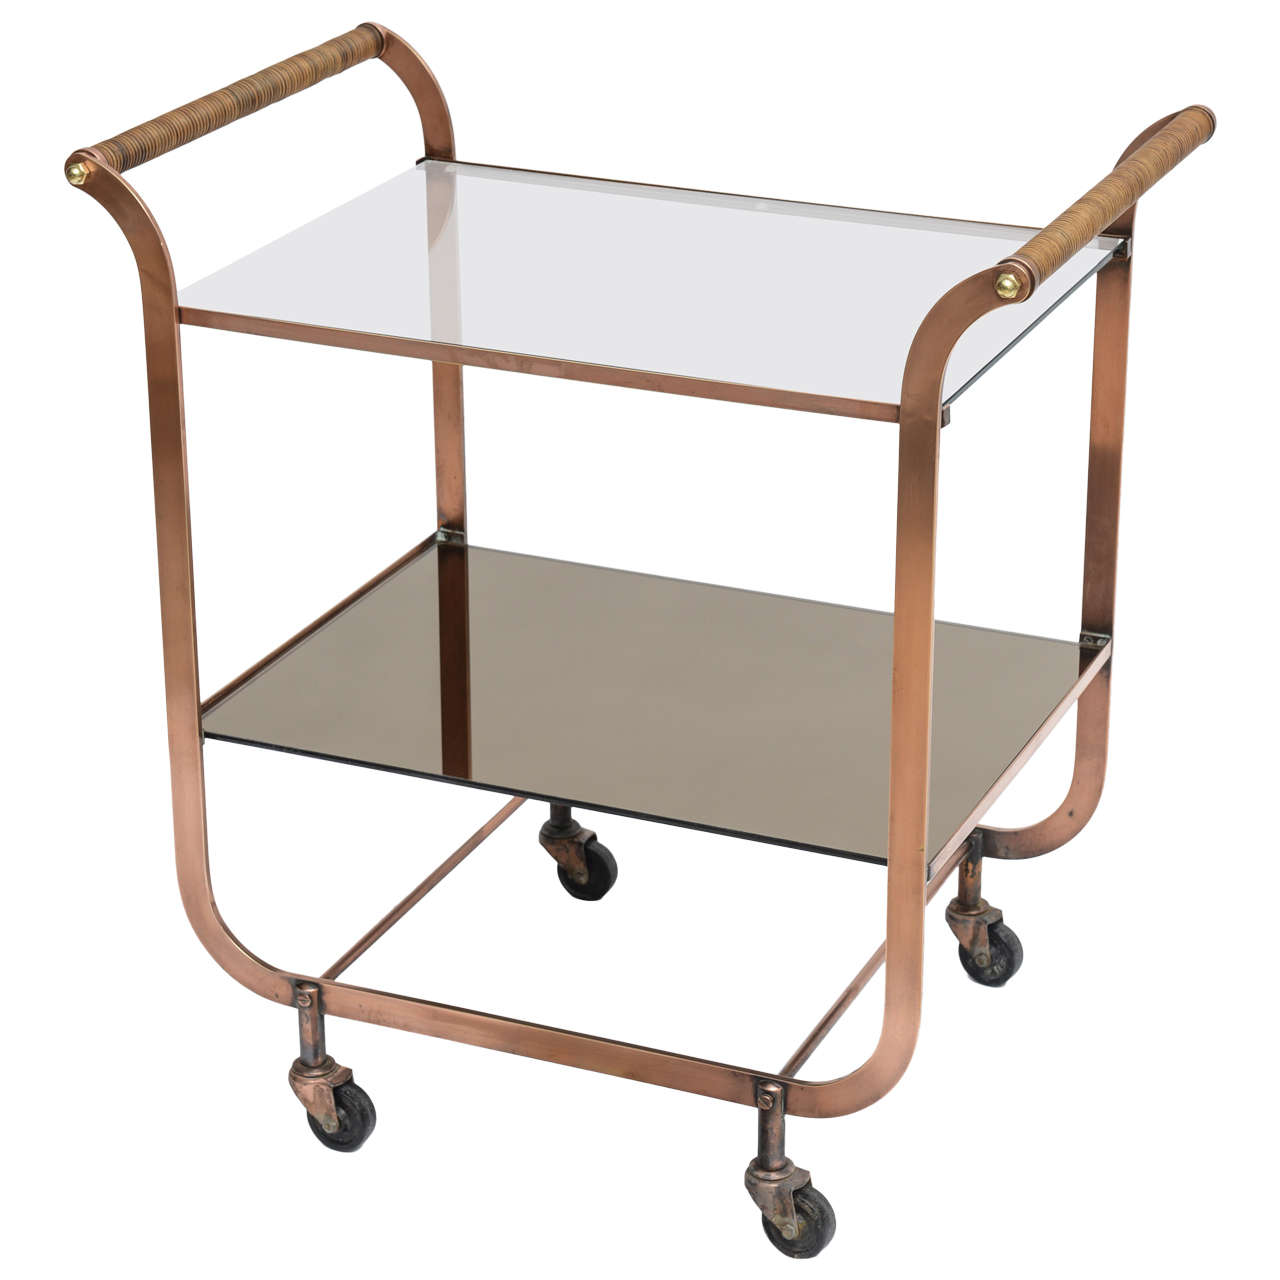 Deco Copper Bar Cart with Rattan Handles